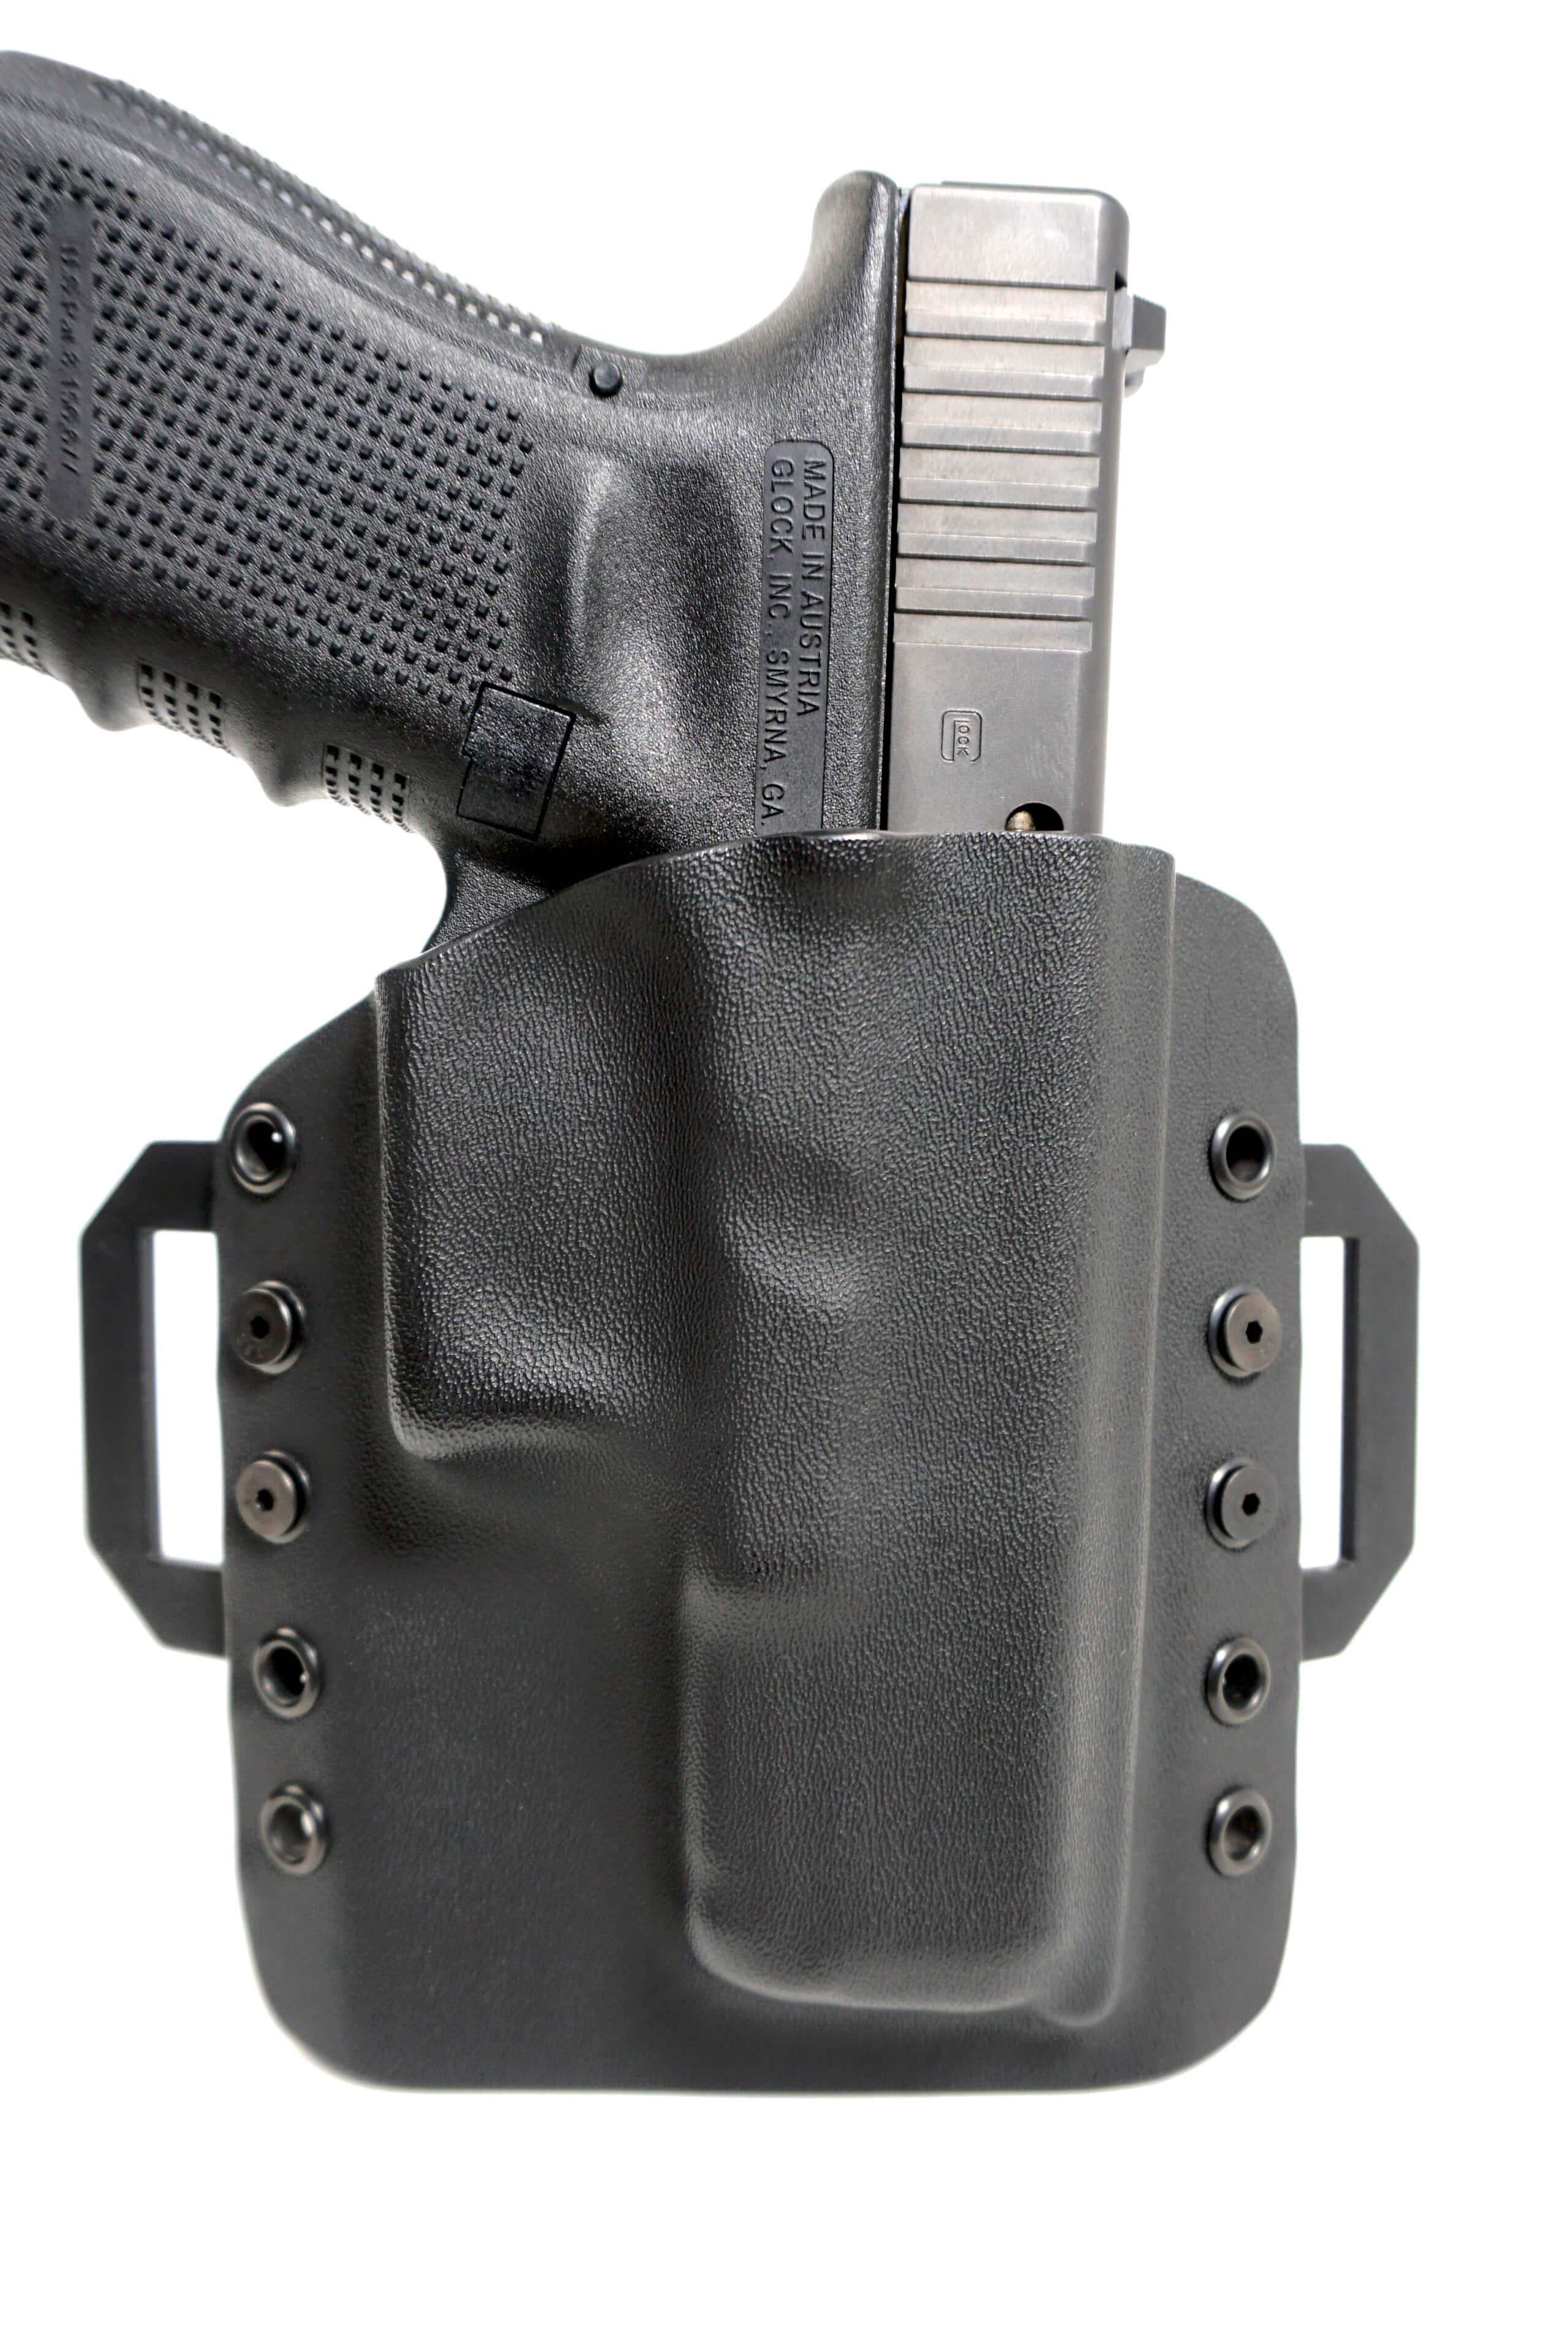 Kydex IWB Gun Holster for Kimber K6s 3/" PistolUSA MadeLifetime Guarantee